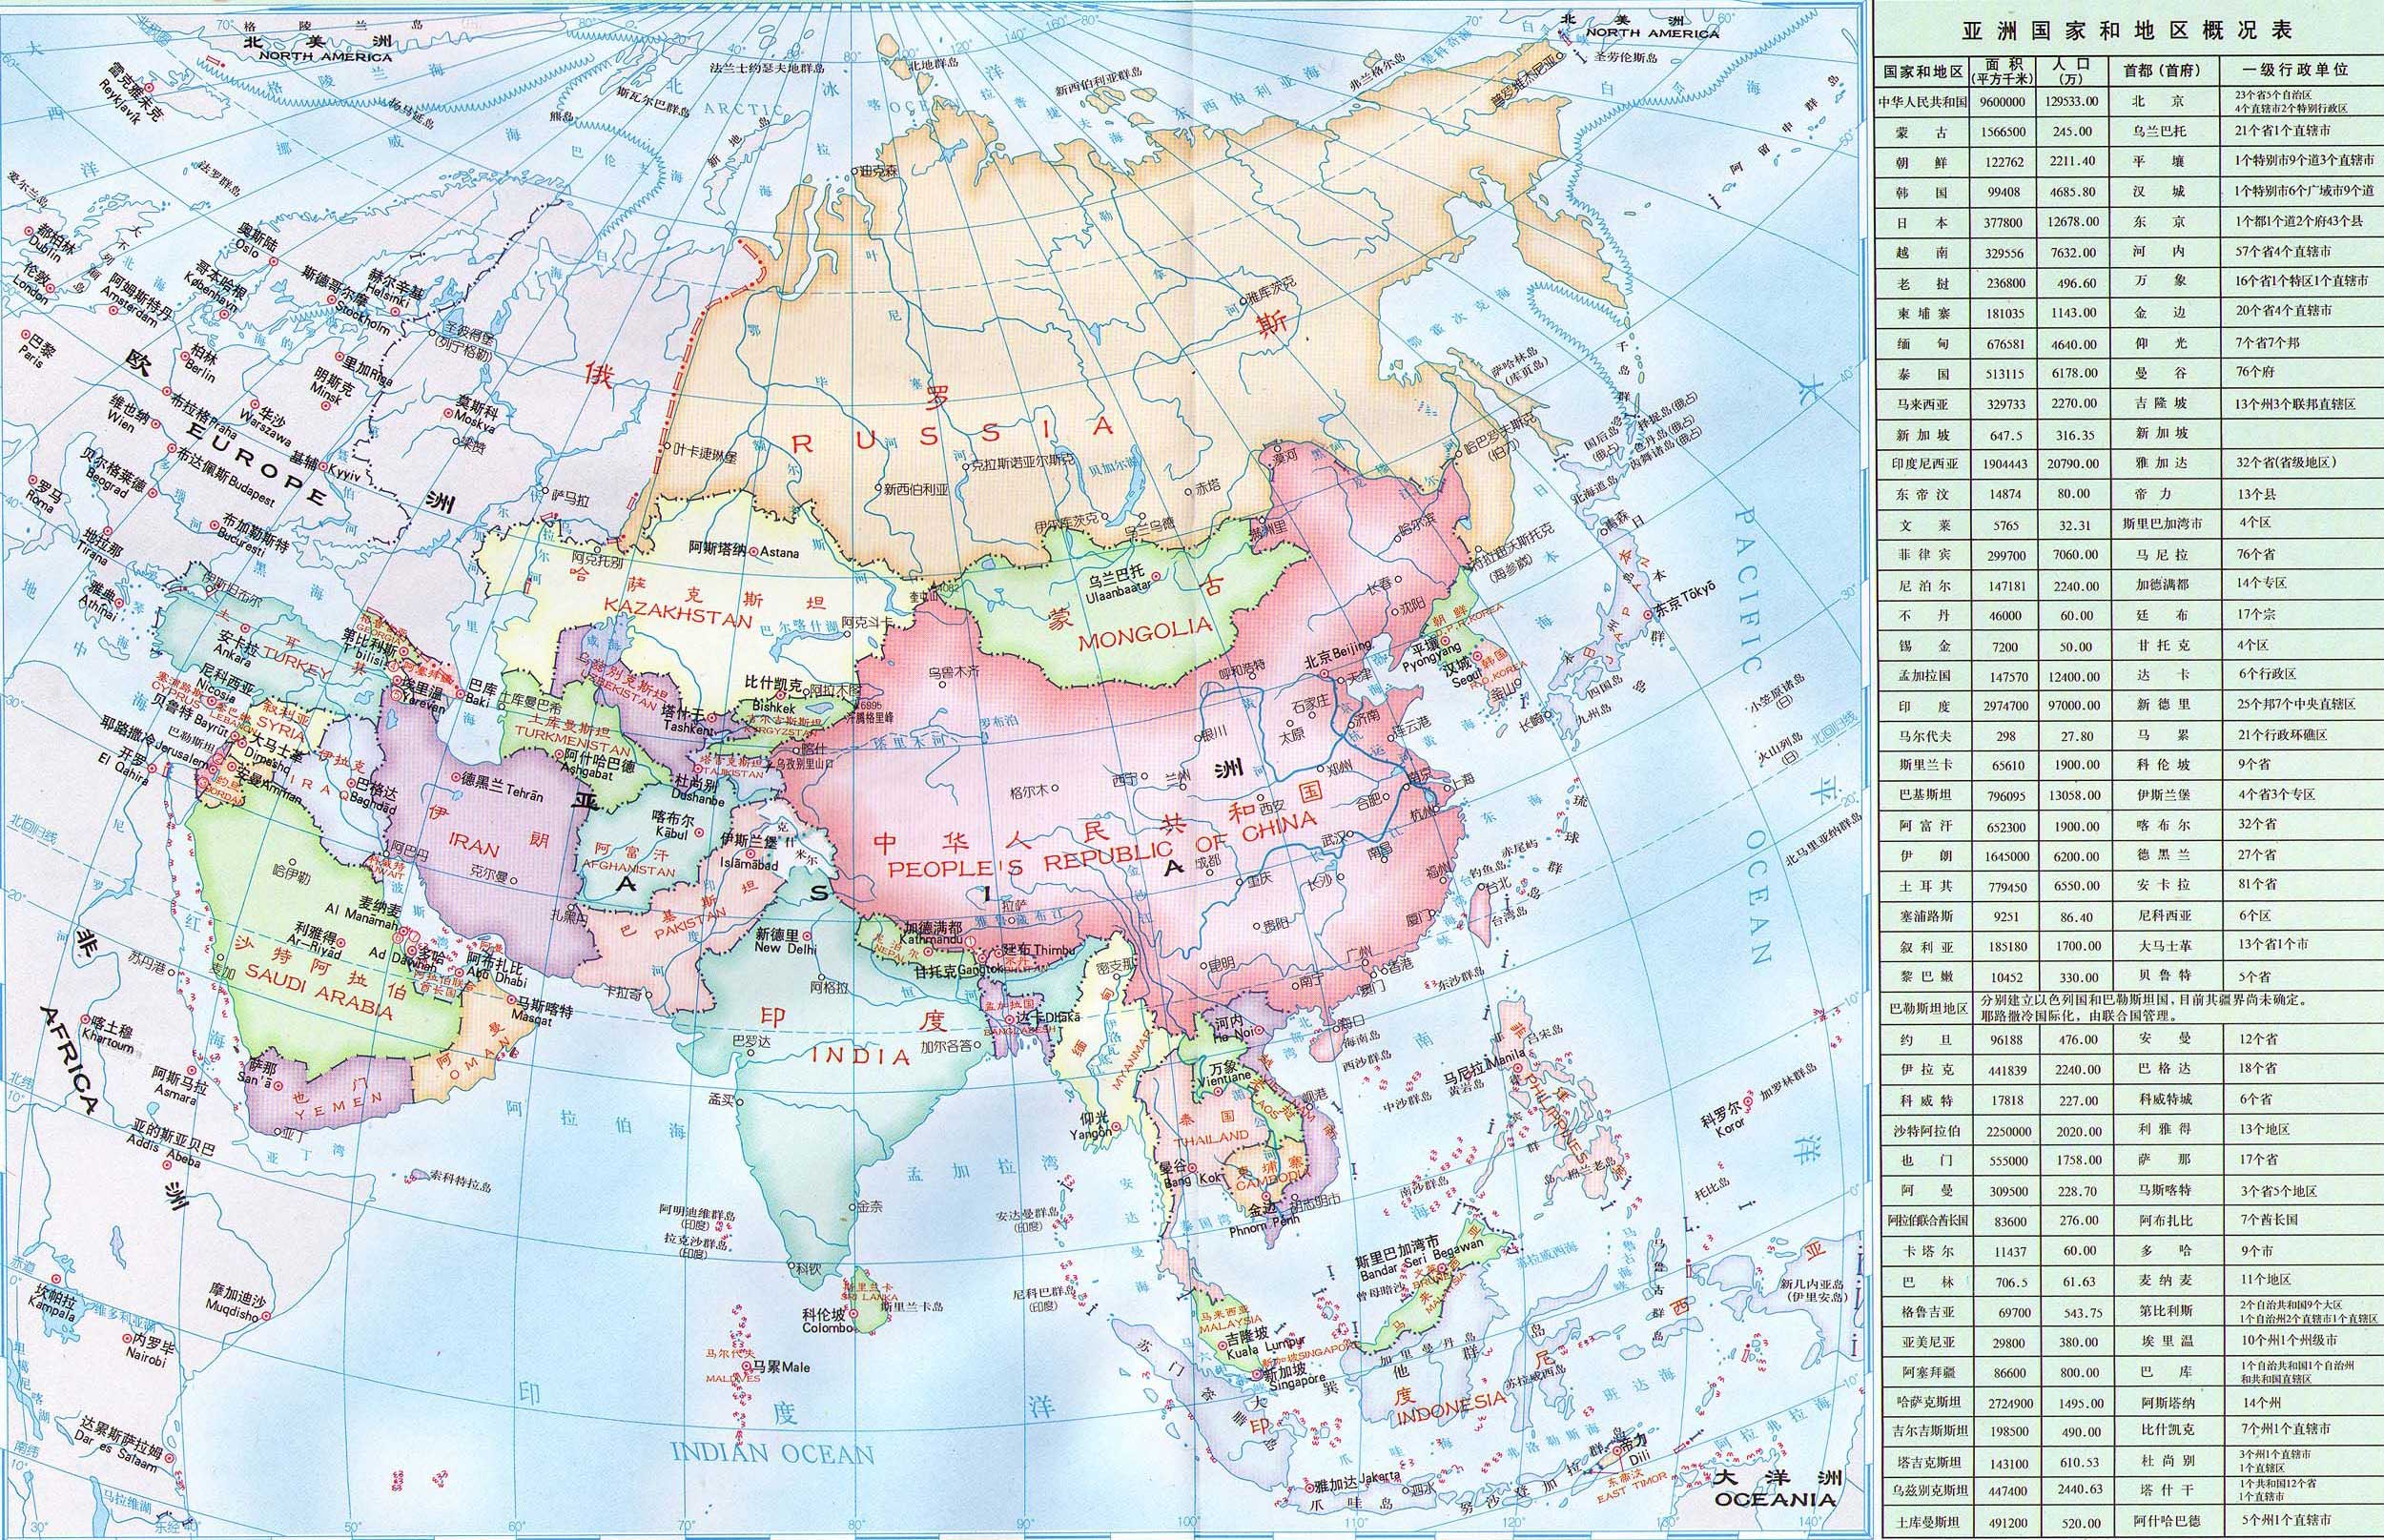 北美洲  南极洲  海洋  国家示意图 上一张地图: 亚洲国家示意简图图片